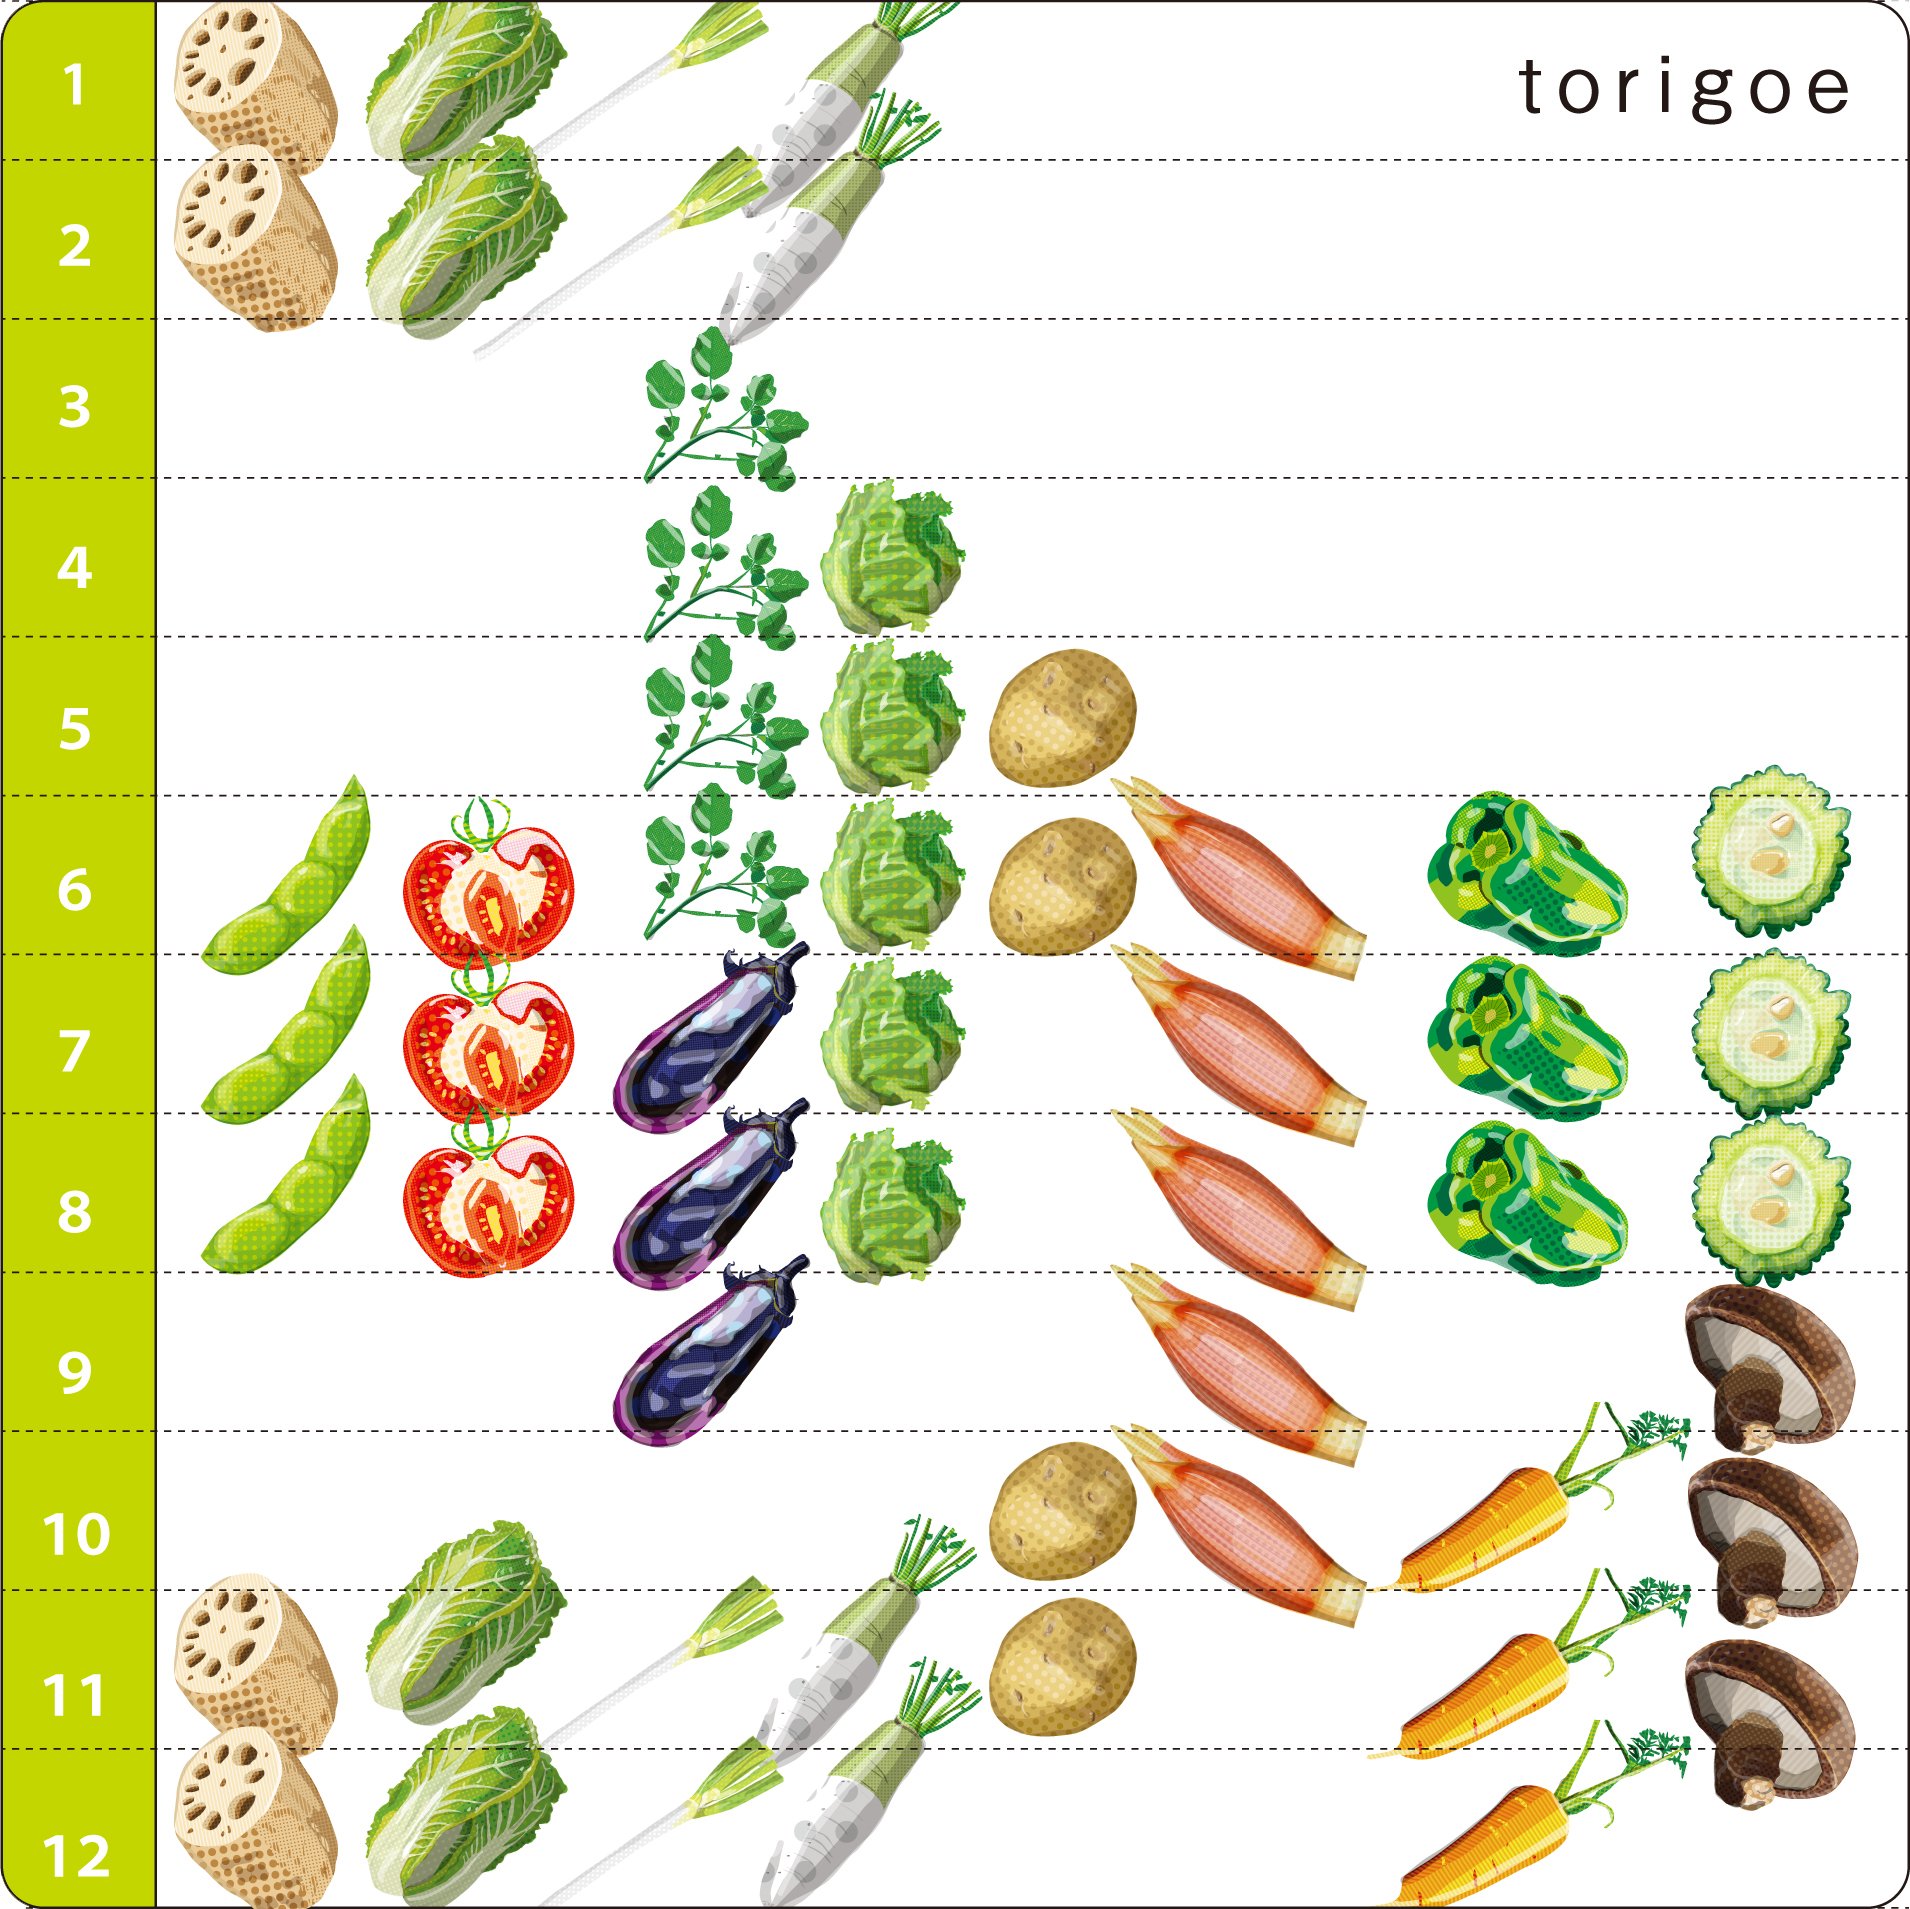 とりごえ雑貨店 今まで 描いた野菜イラストの旬が いつ頃なのかを調べました いつか野菜 カレンダーを作りたいなー と思っているんです こうして見てみると 春野菜をあまり描いてないことが判明 イラスト 野菜 T Co 0tjsxi8syh Twitter